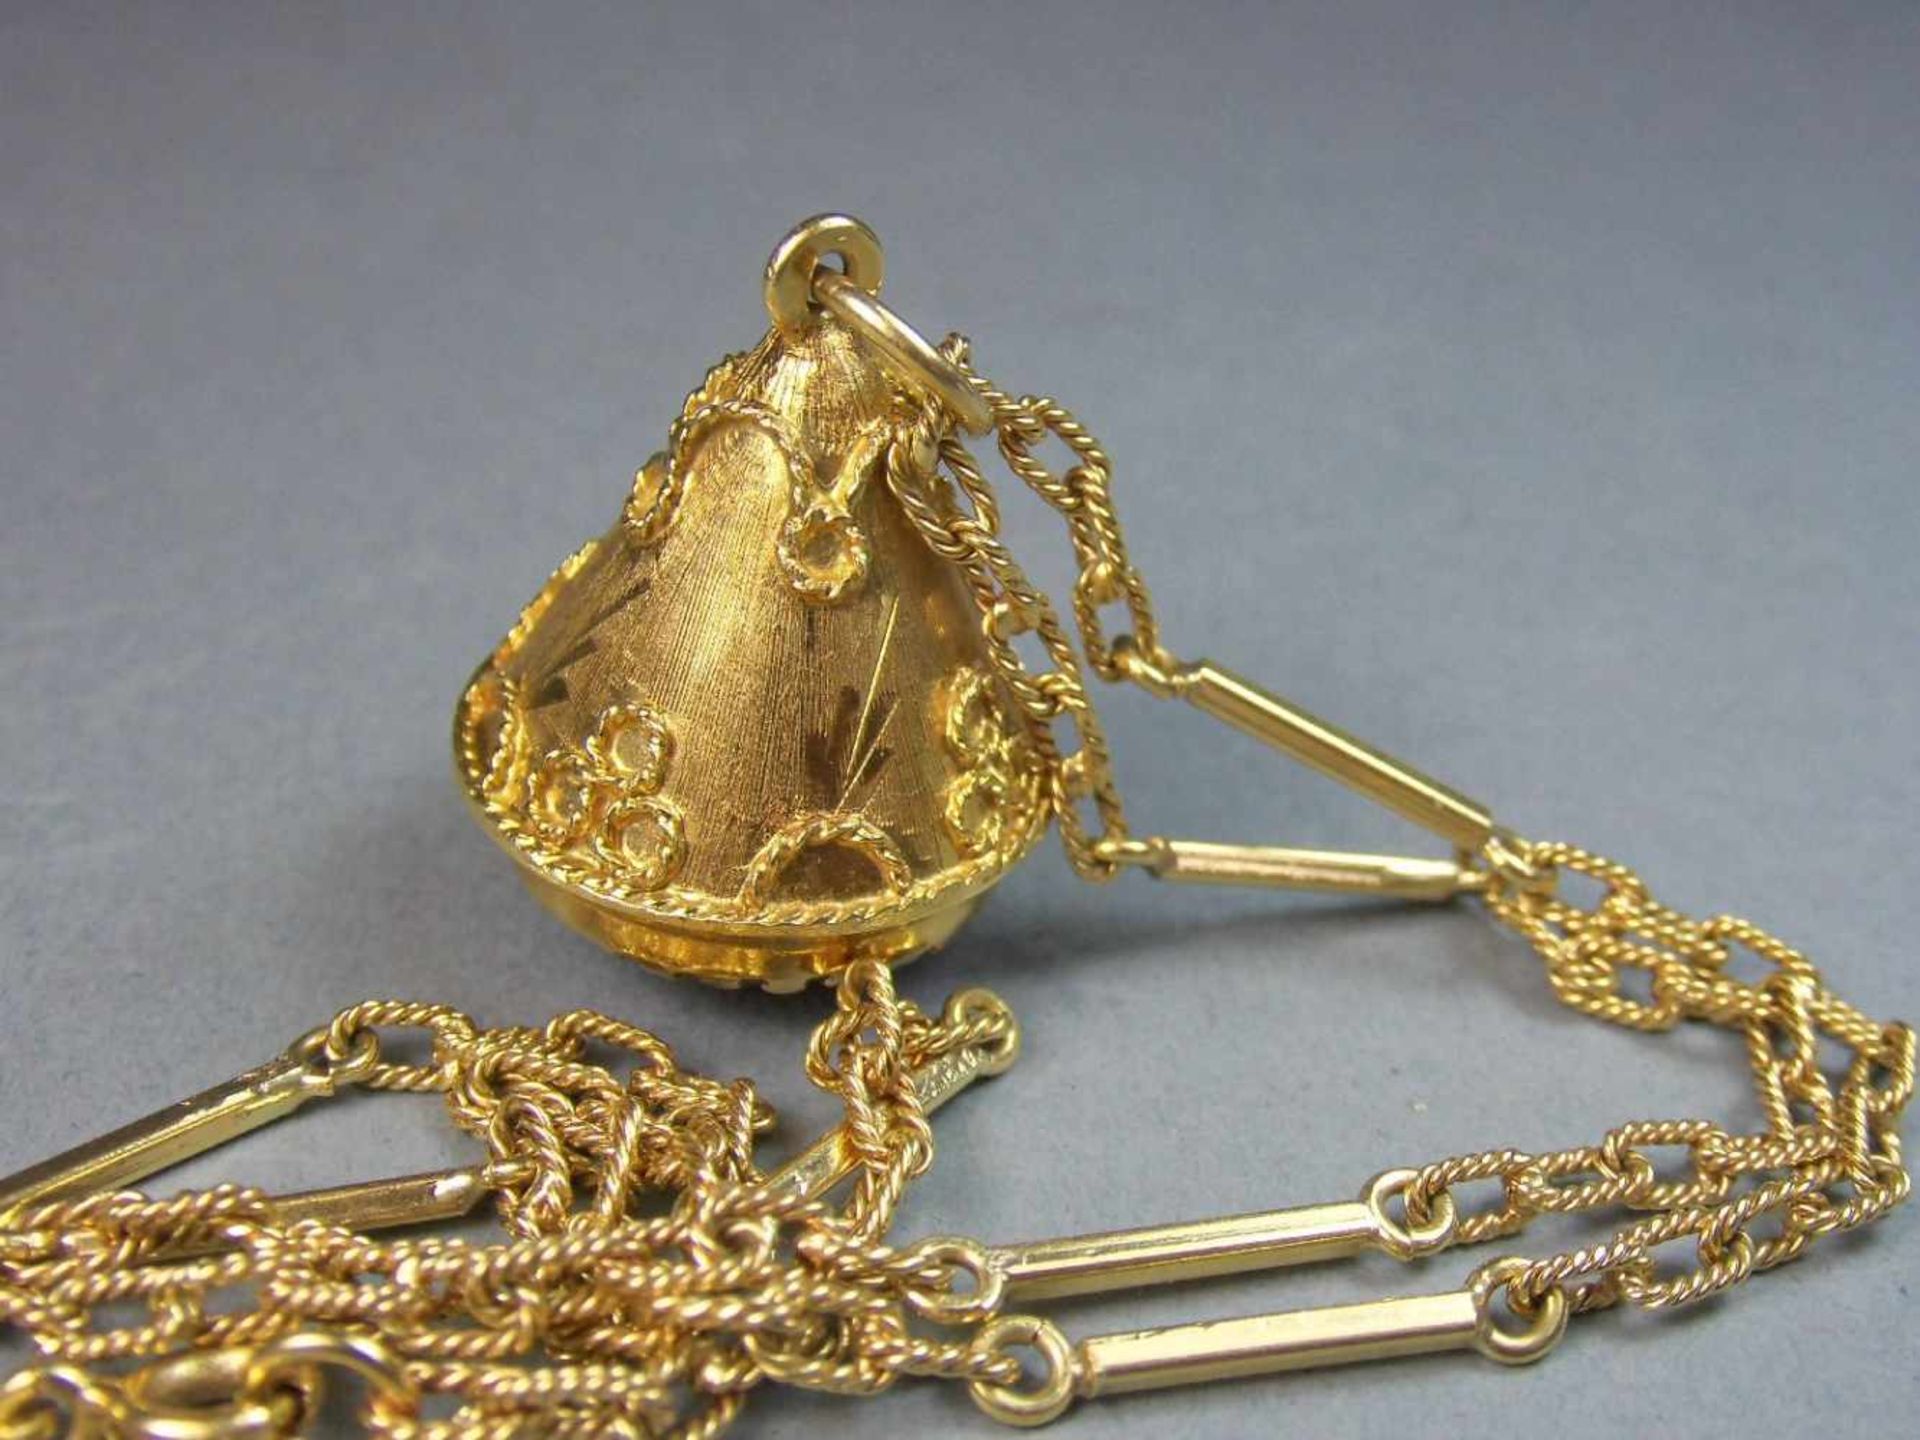 KETTE MIT ANHÄNGER in Kegelform / necklace and pendant, darin roséfarbener Edelstein, 750er Gelbgold - Image 4 of 4